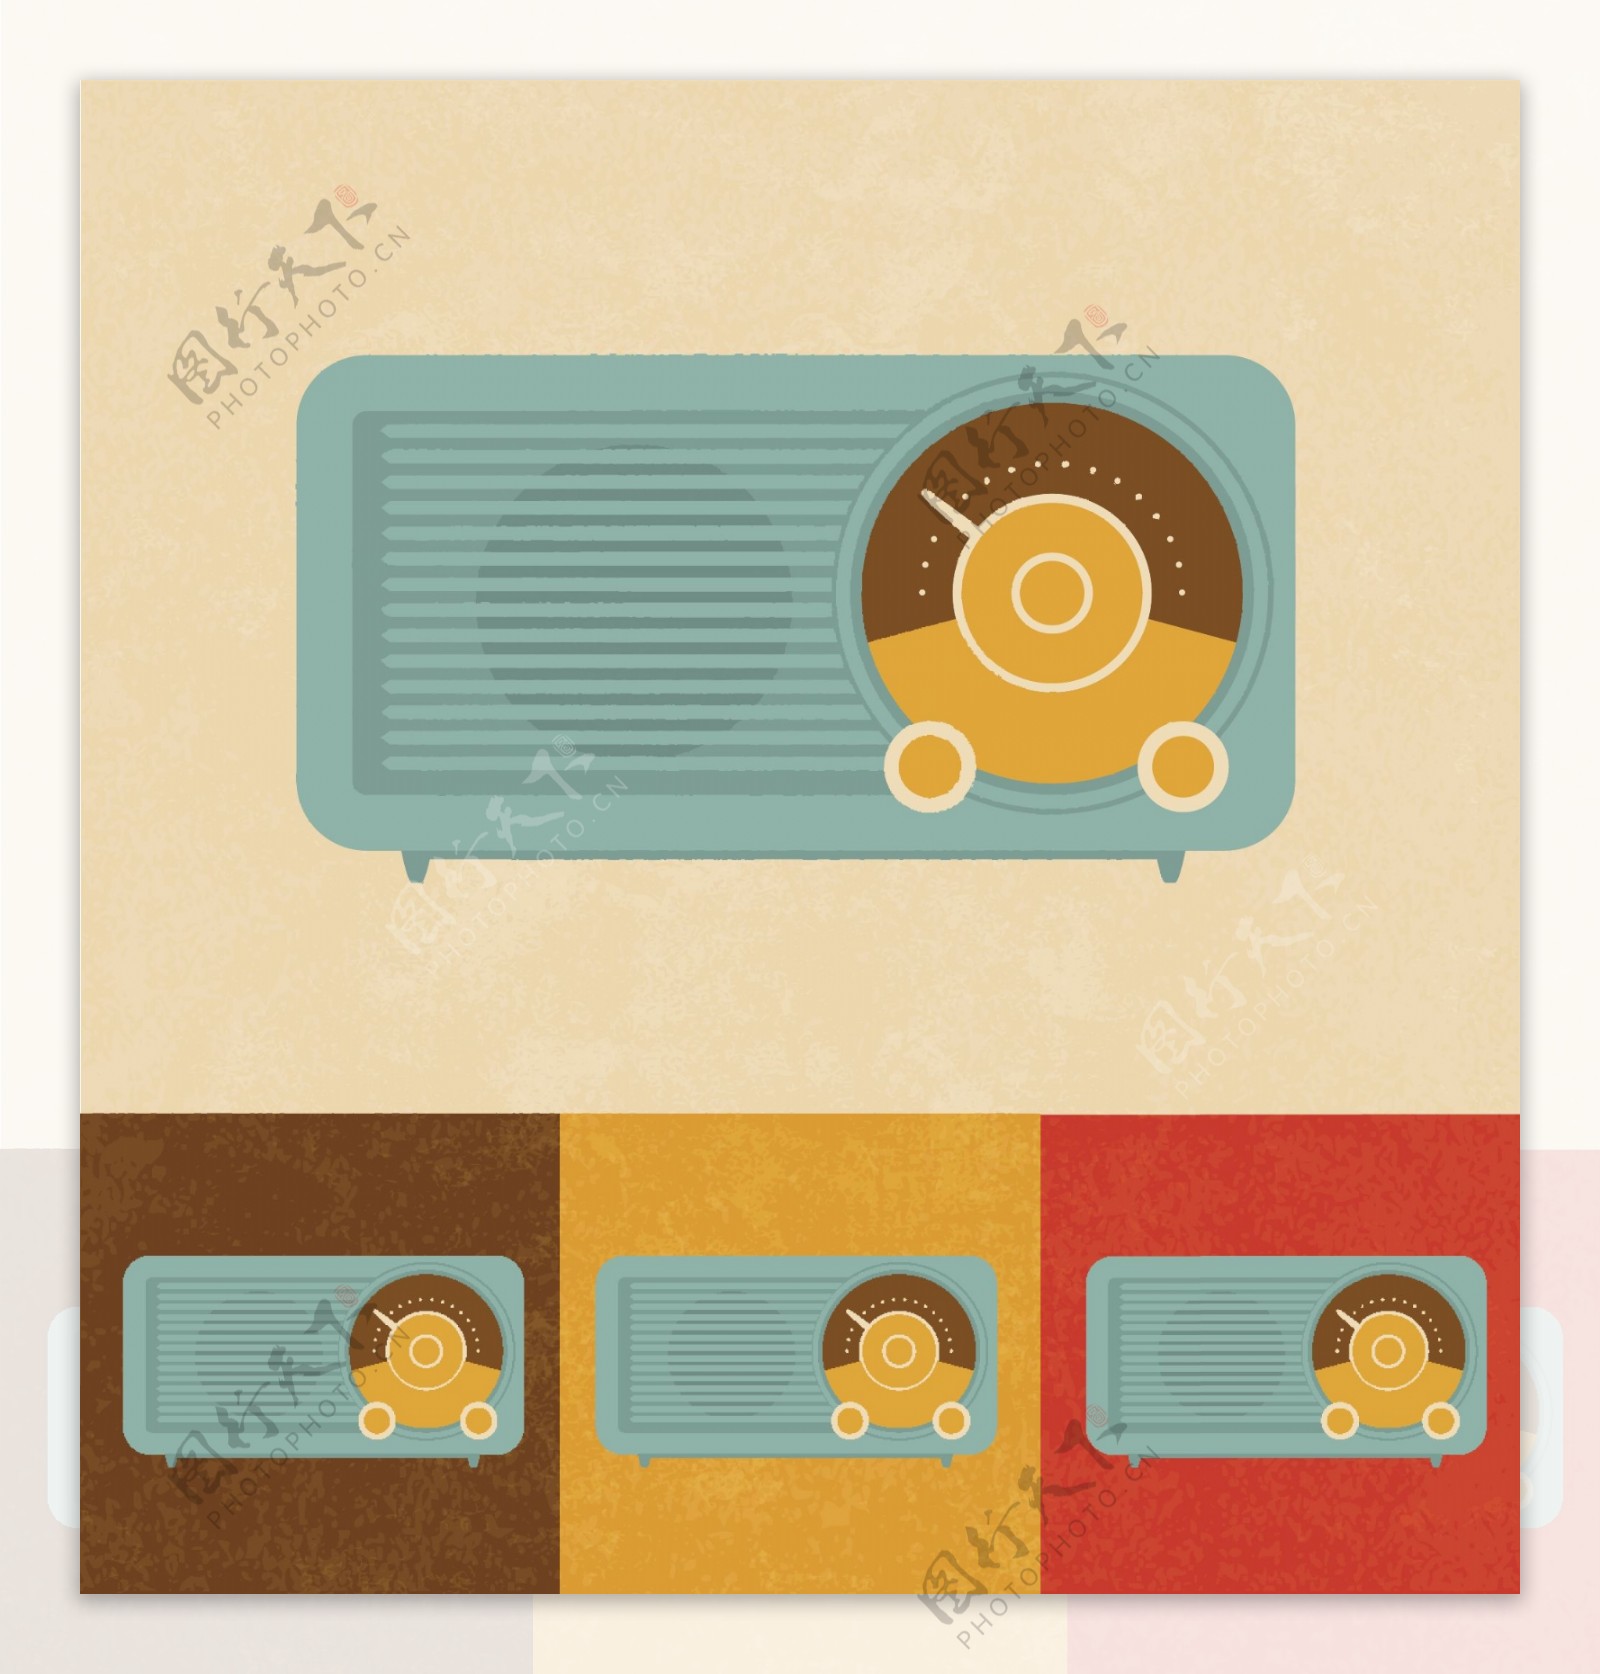 复古的图标旧收音机